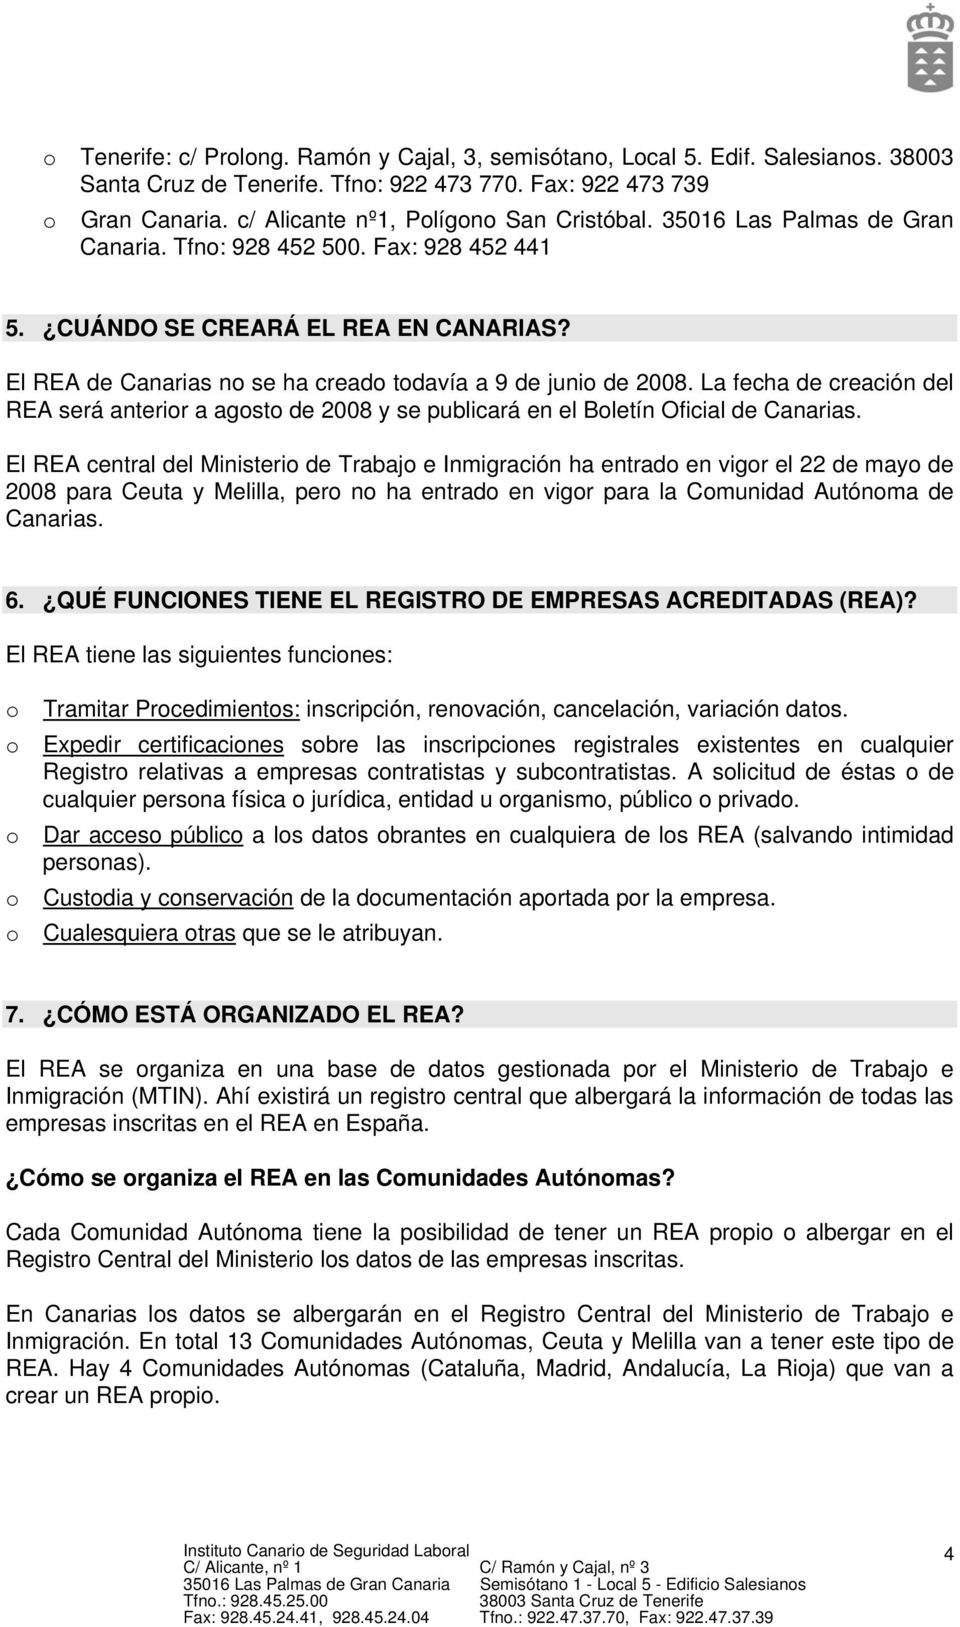 El REA de Canarias no se ha creado todavía a 9 de junio de 2008. La fecha de creación del REA será anterior a agosto de 2008 y se publicará en el Boletín Oficial de Canarias.